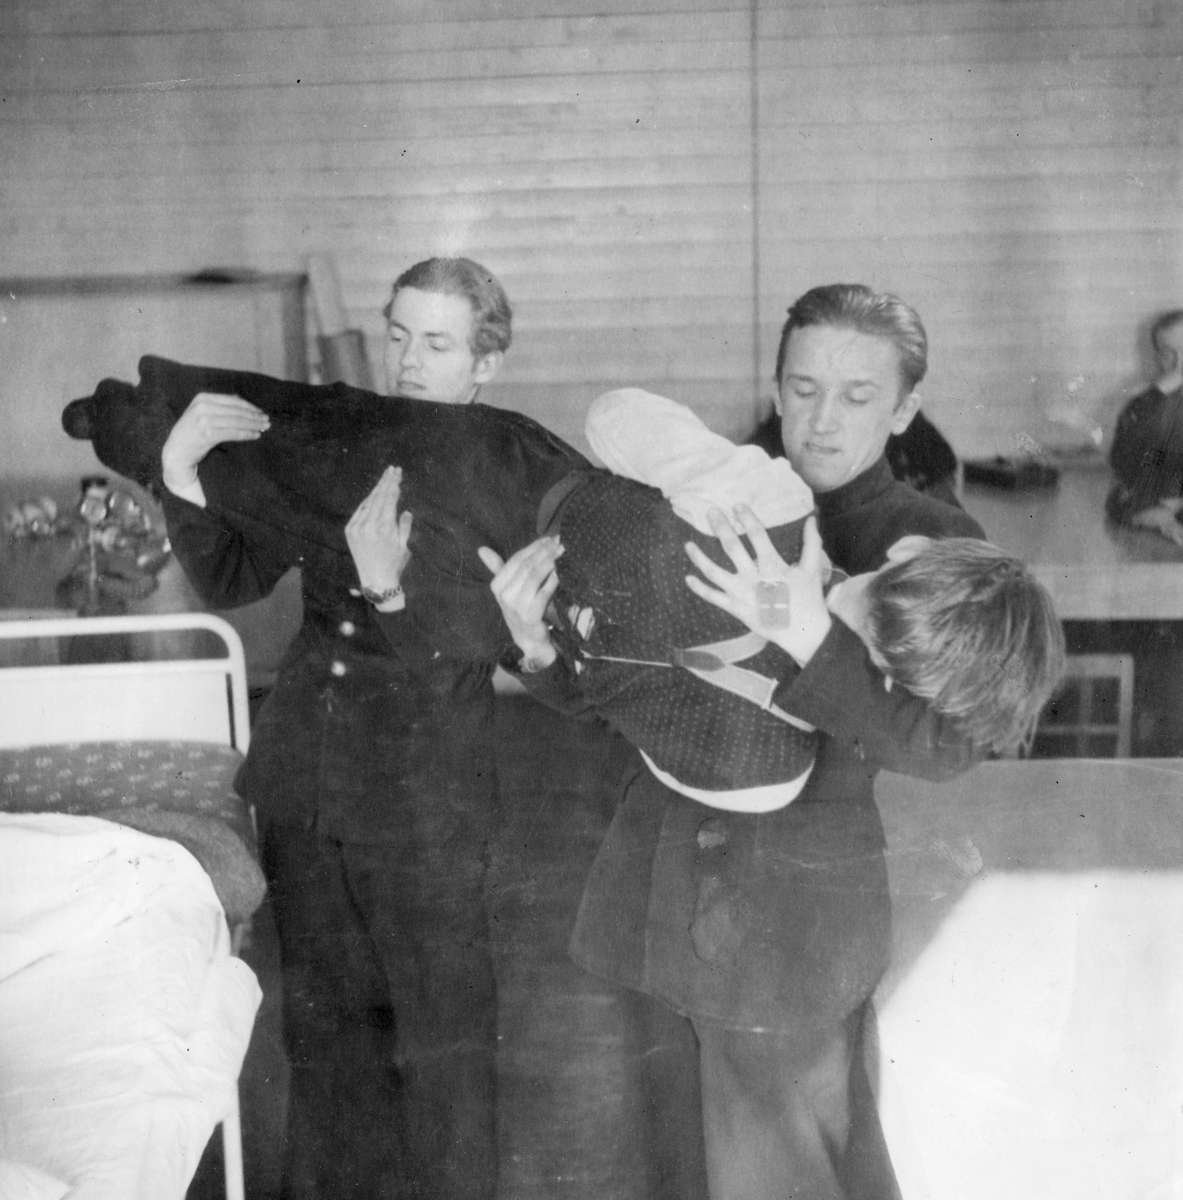 Övning av lyft av skadad vid sjukvårdskurs på F 11 Södermanlands flygflottilj, 1945. Två soldater lyfter en man från en räddningsbår till sjuksäng i skolsal.

Ur fotoalbum "Sjukvårdsskolan 15/1-15/3 1945" från F 11.